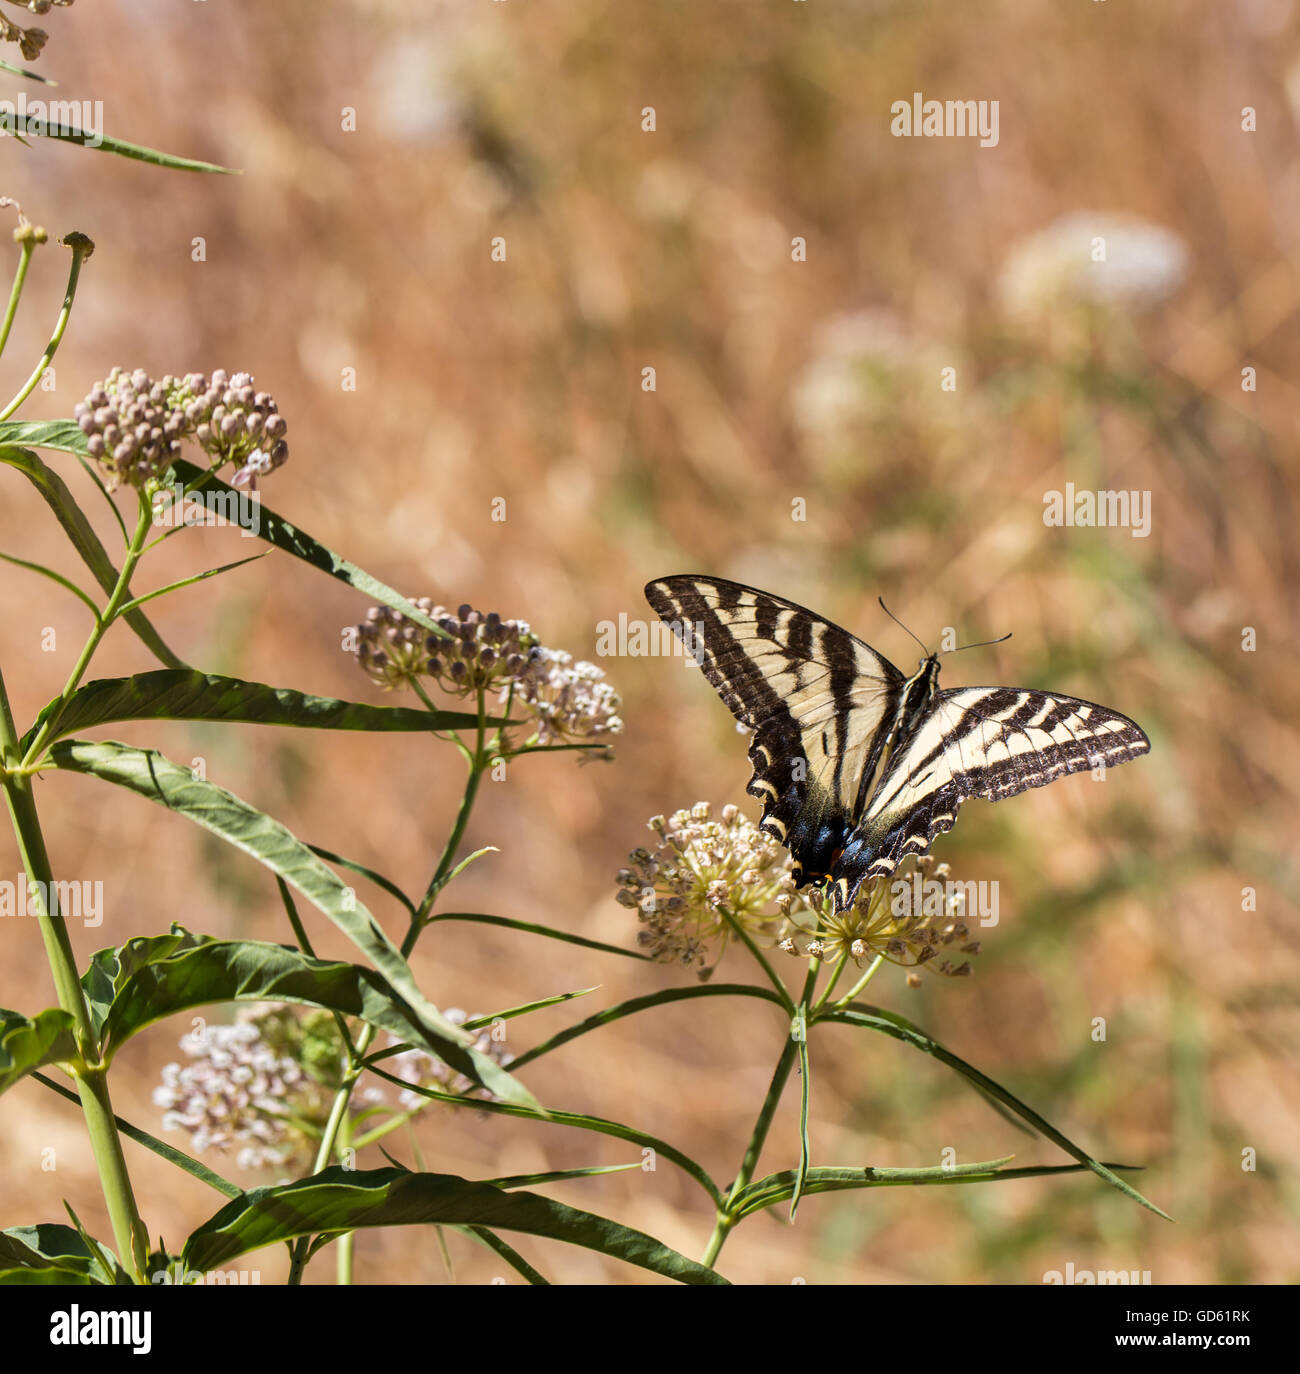 Western Tiger Swallowtail (Papilio rutulus) feeding on milkweed plant. Stock Photo